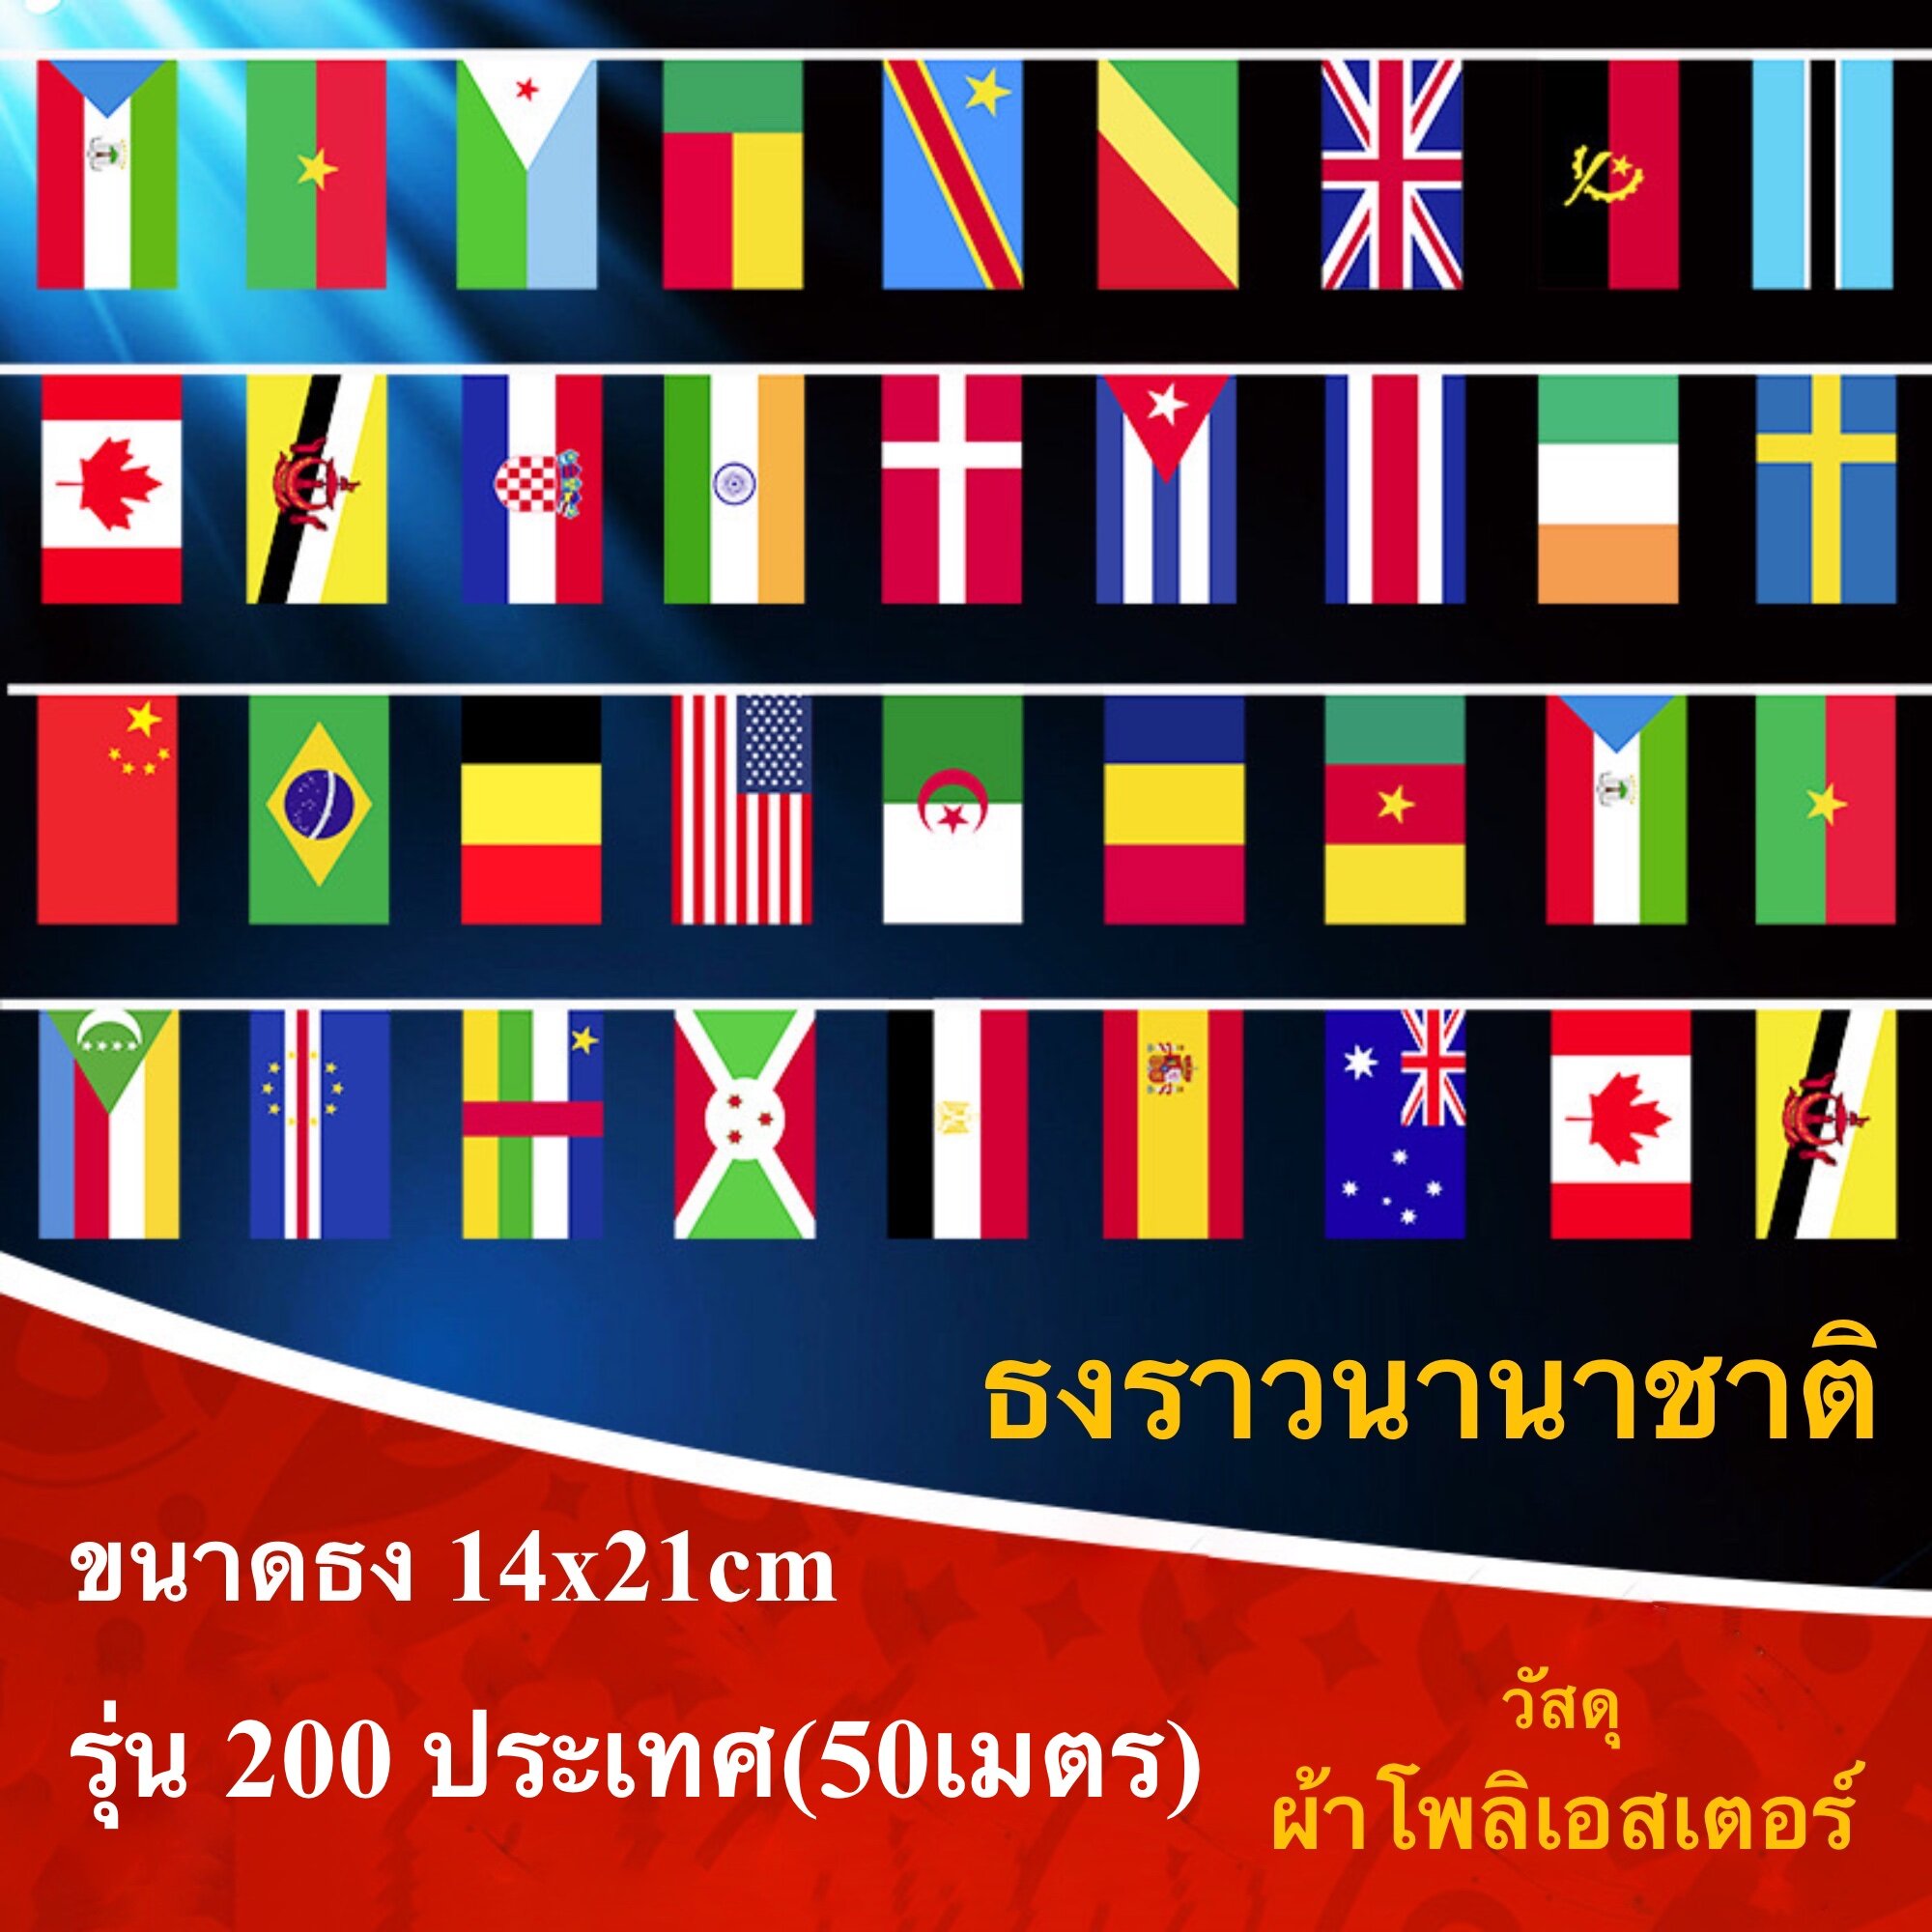 ธงราว ธงนานาชาติ 200 ประเทศ 50 เมตร ธง14x21cm ผ้าใยสังเคราะห์